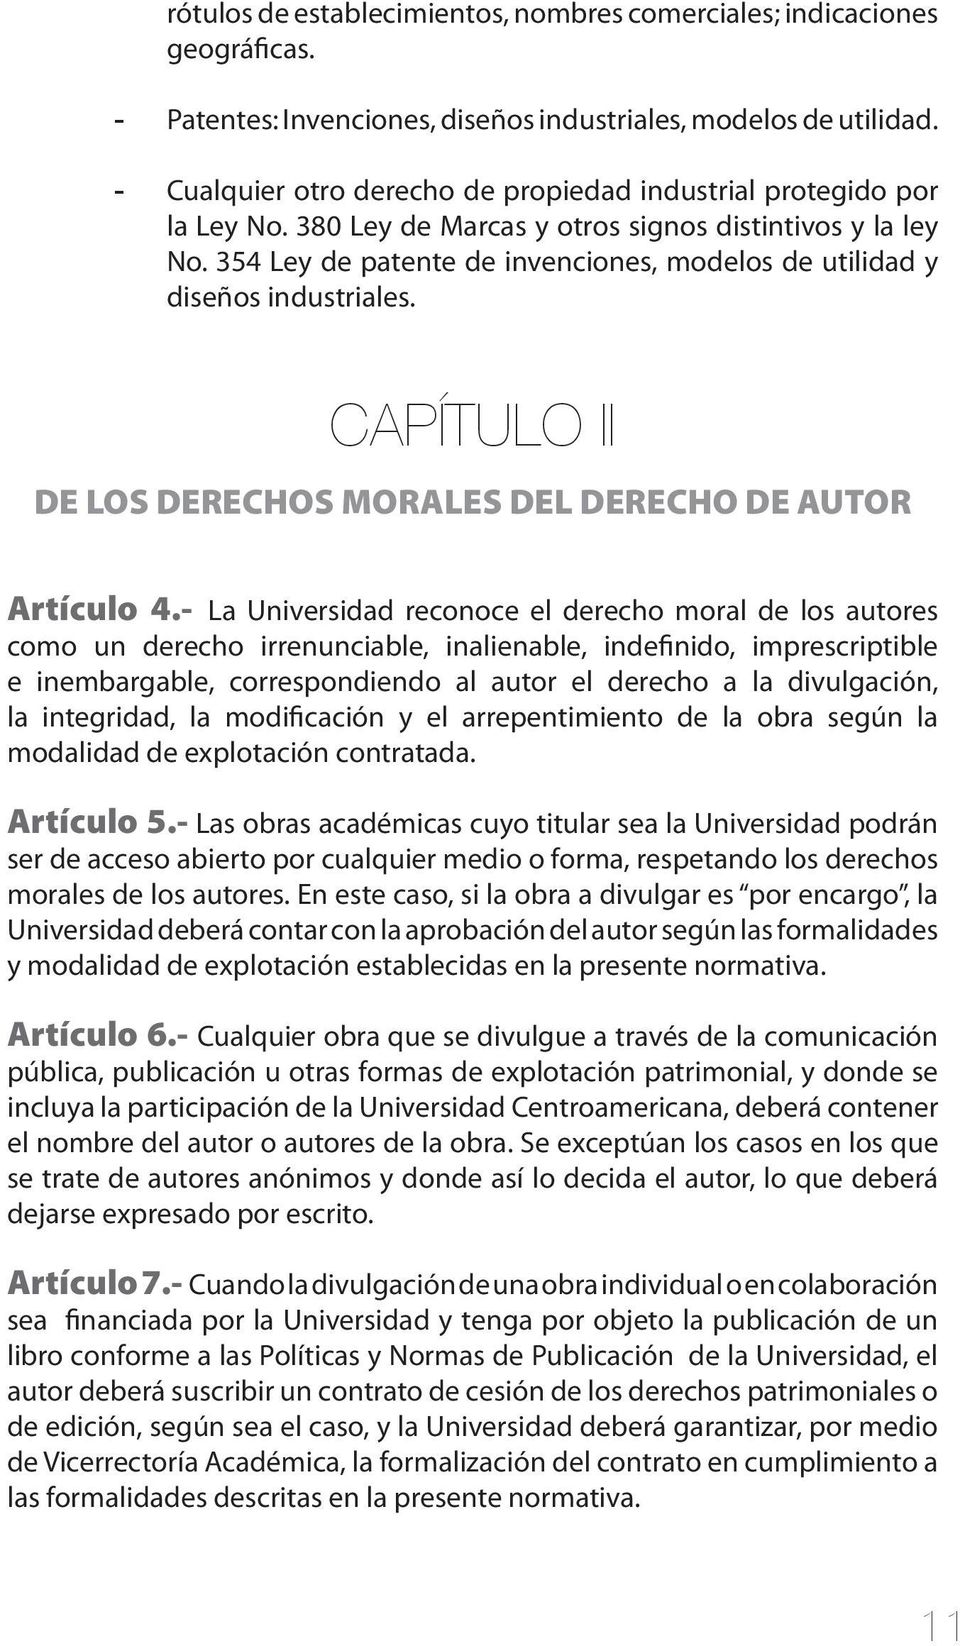 354 Ley de patente de invenciones, modelos de utilidad y diseños industriales. CAPÍTULO II DE LOS DERECHOS MORALES DEL DERECHO DE AUTOR Artículo 4.